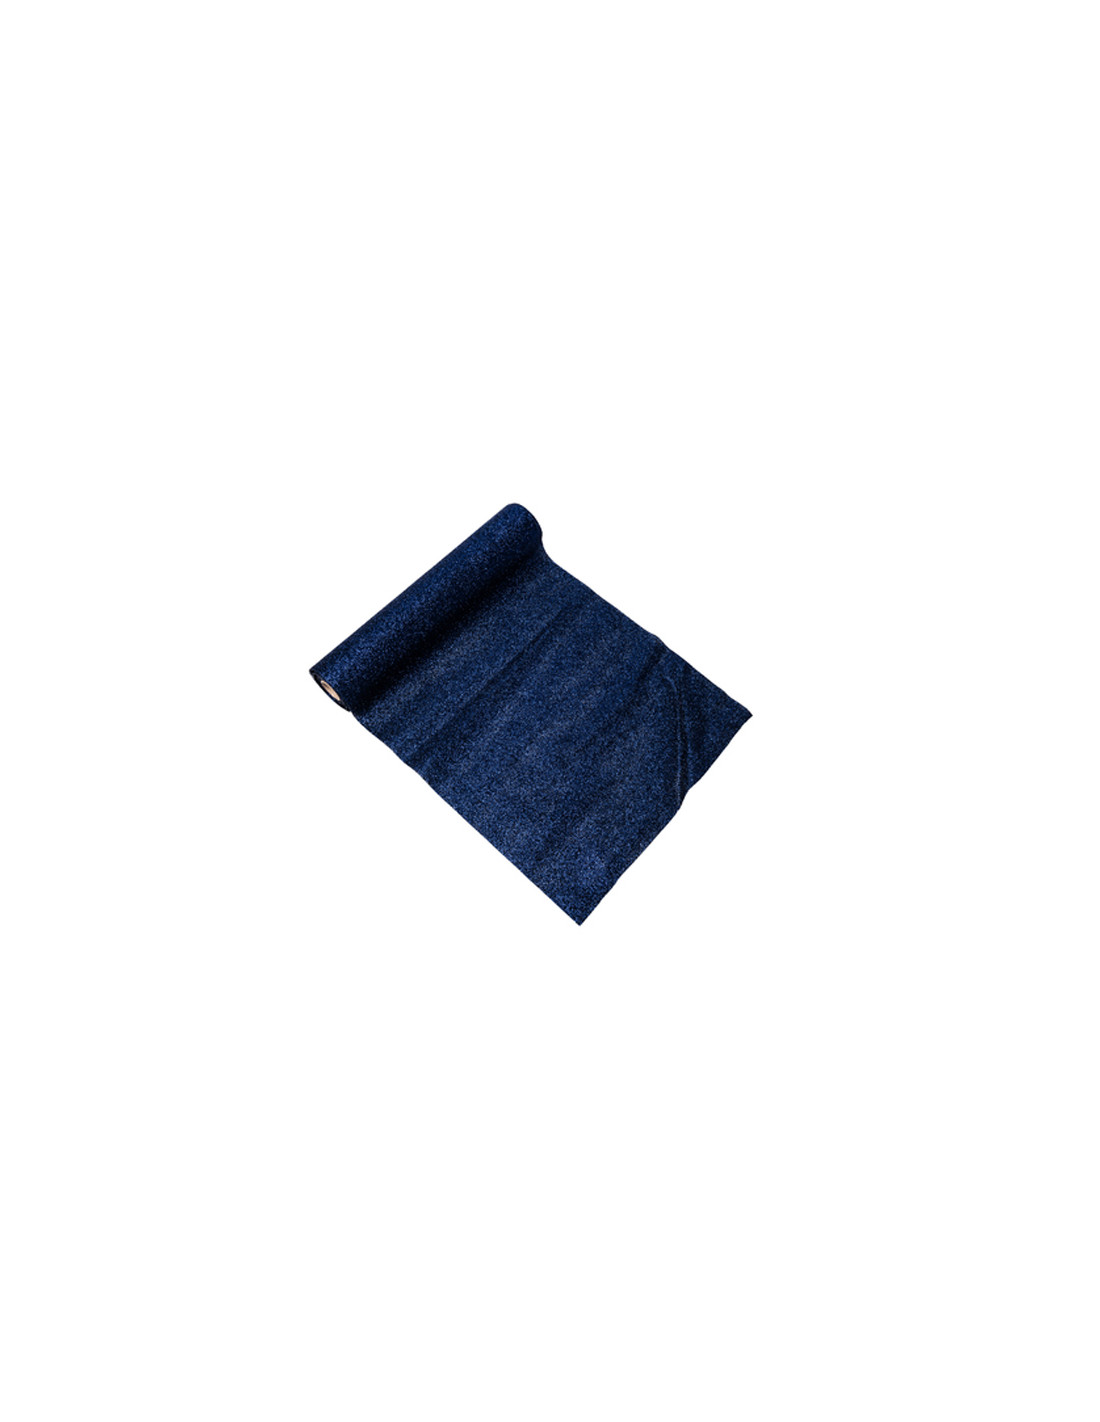 Taille Unique Artyfêtes Diffusion Chemin de Table pailleté Bleu Nuit 28 cm x 3 m Bleu 